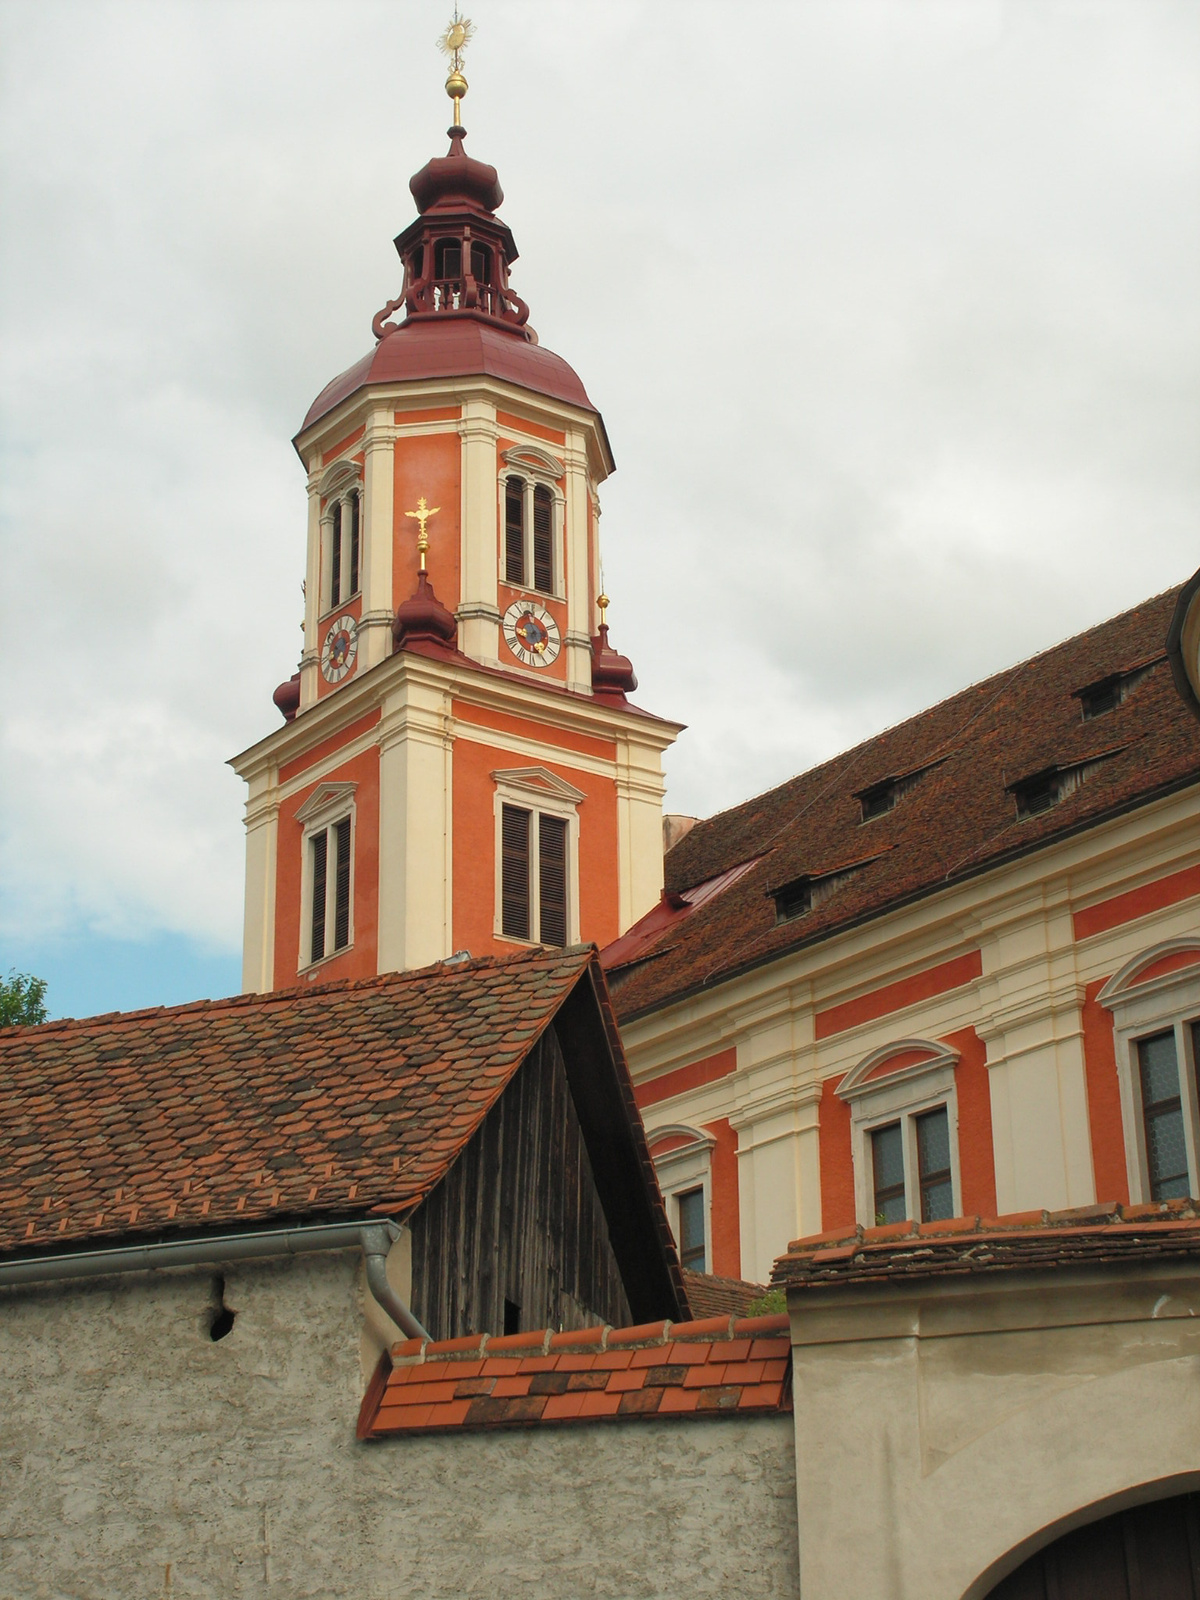 Ausztria, Pöllau, Stifts- und Pfarrkirche St. Veit, SzG3